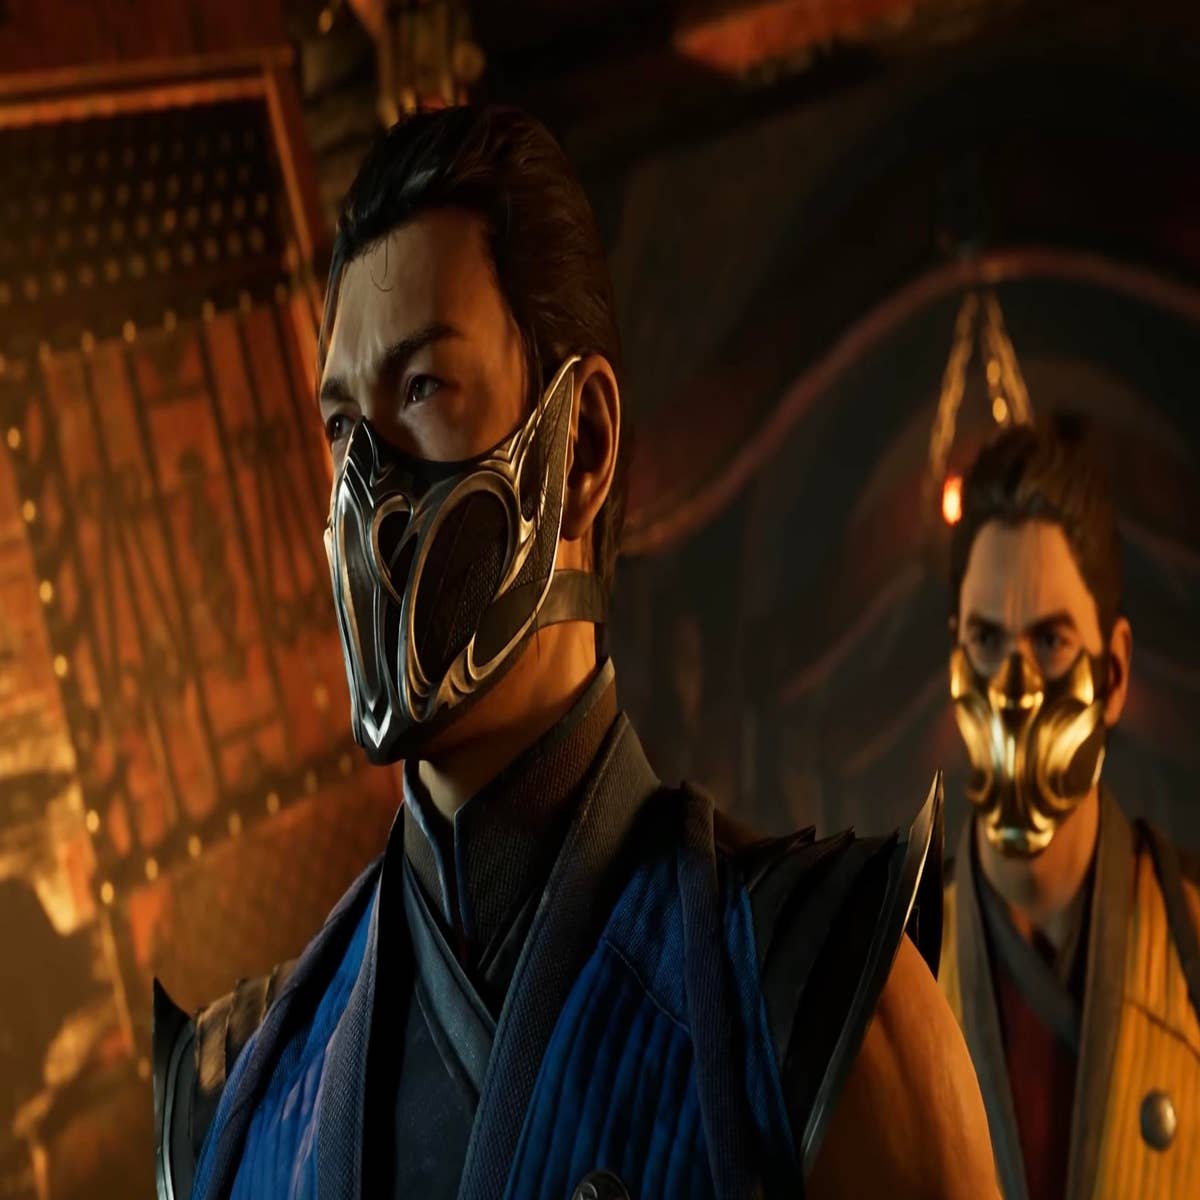 Mortal Kombat 1 announced, releasing September 2023